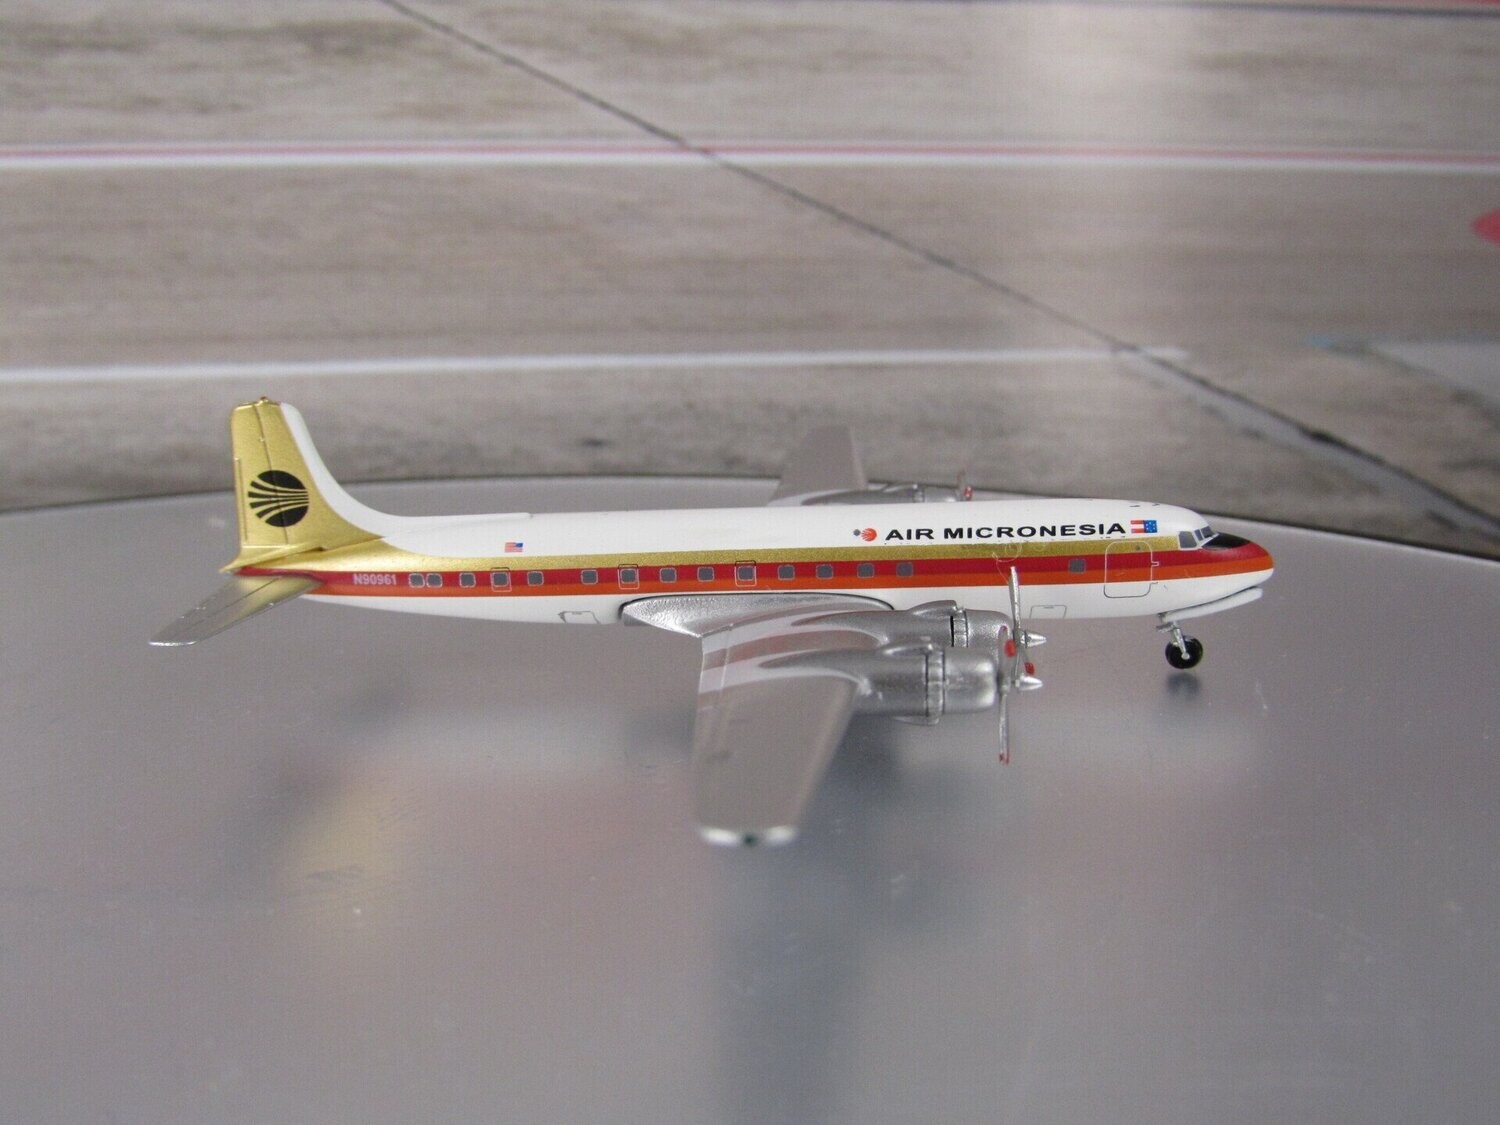 1/400 Air Micronesia DC-6 Reg No. N90961